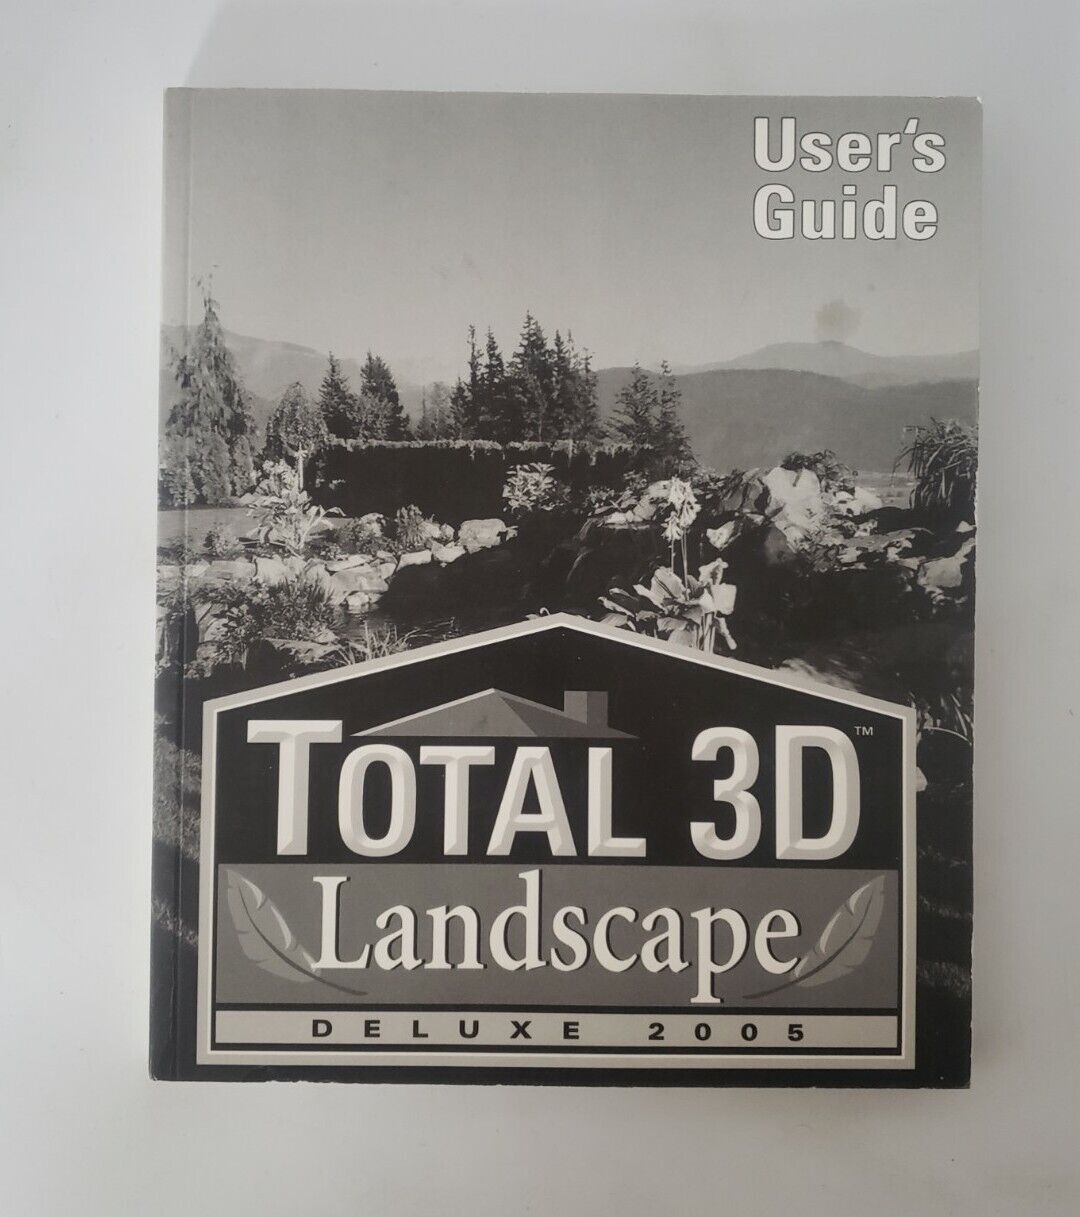 2005 Total 3D Home & Landscape Design manual